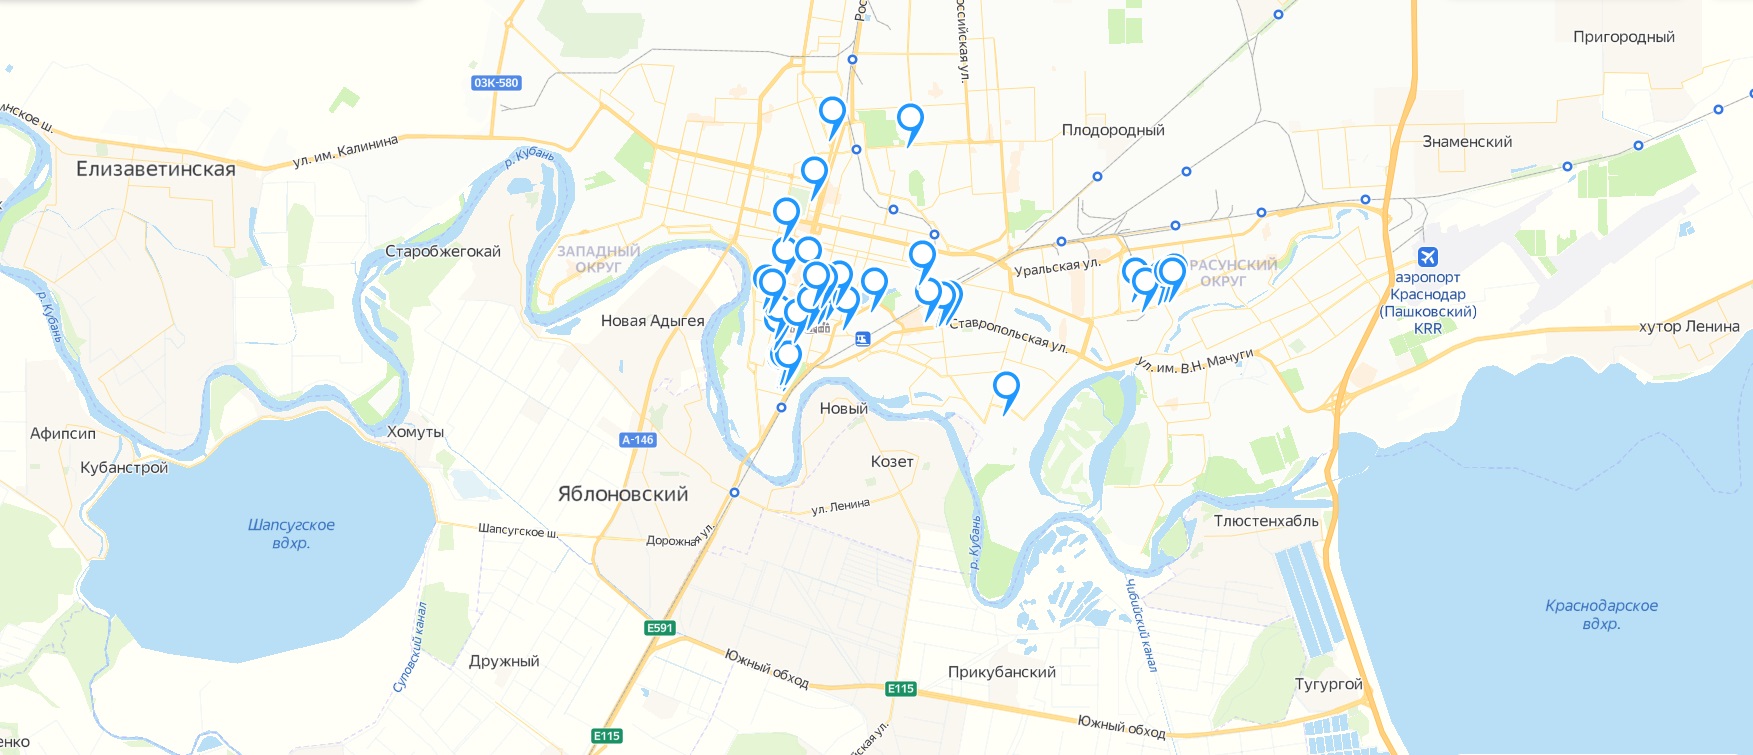 Подробная карта Краснодара с достопримечательностями